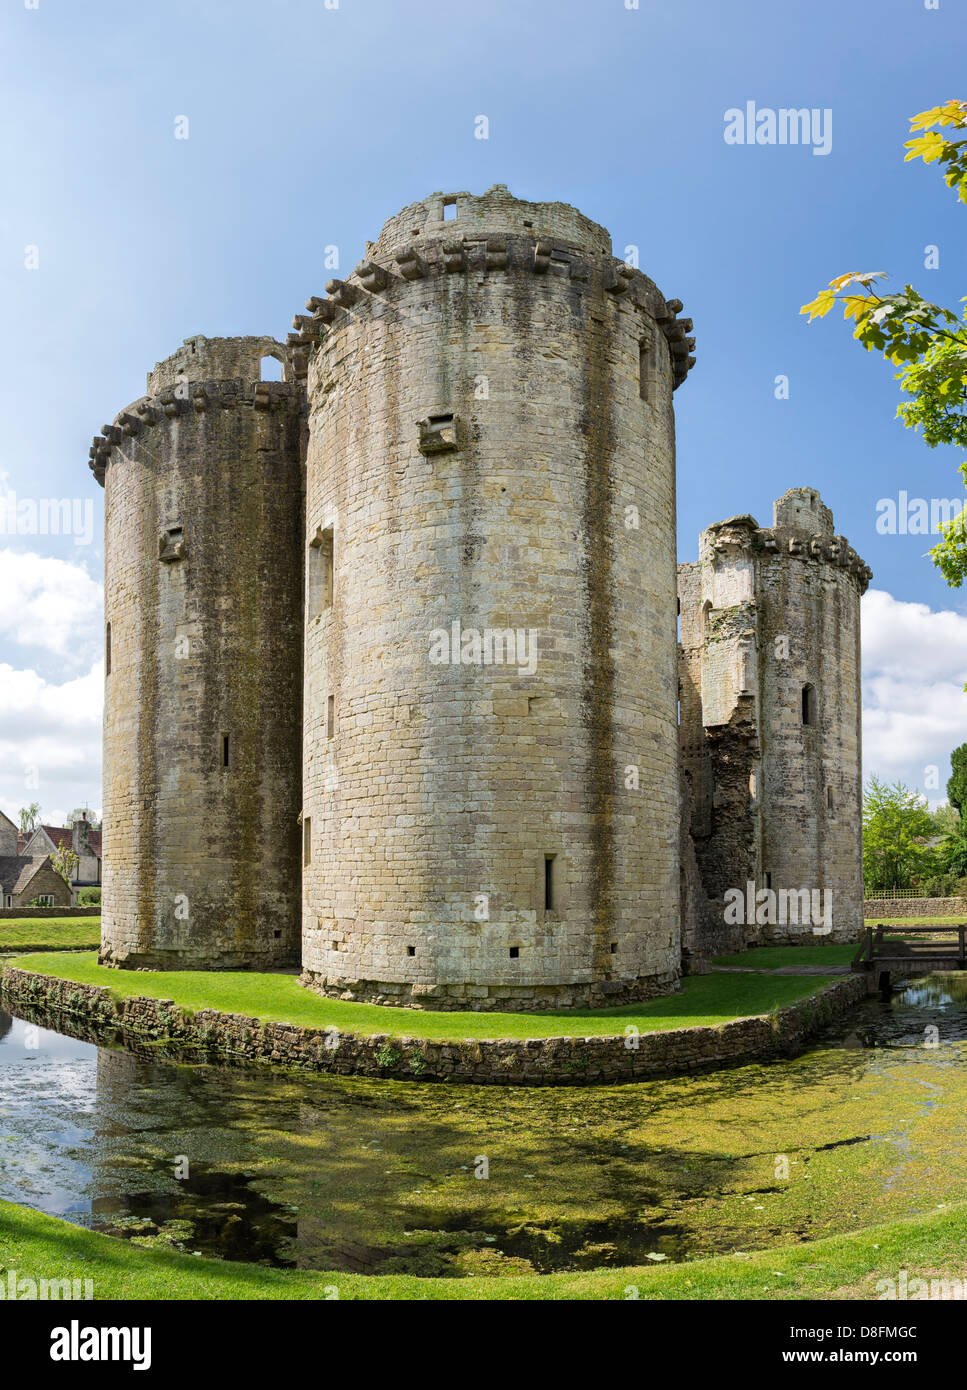 Nunney castle médiévale ruinée, Somerset, England, UK Banque D'Images